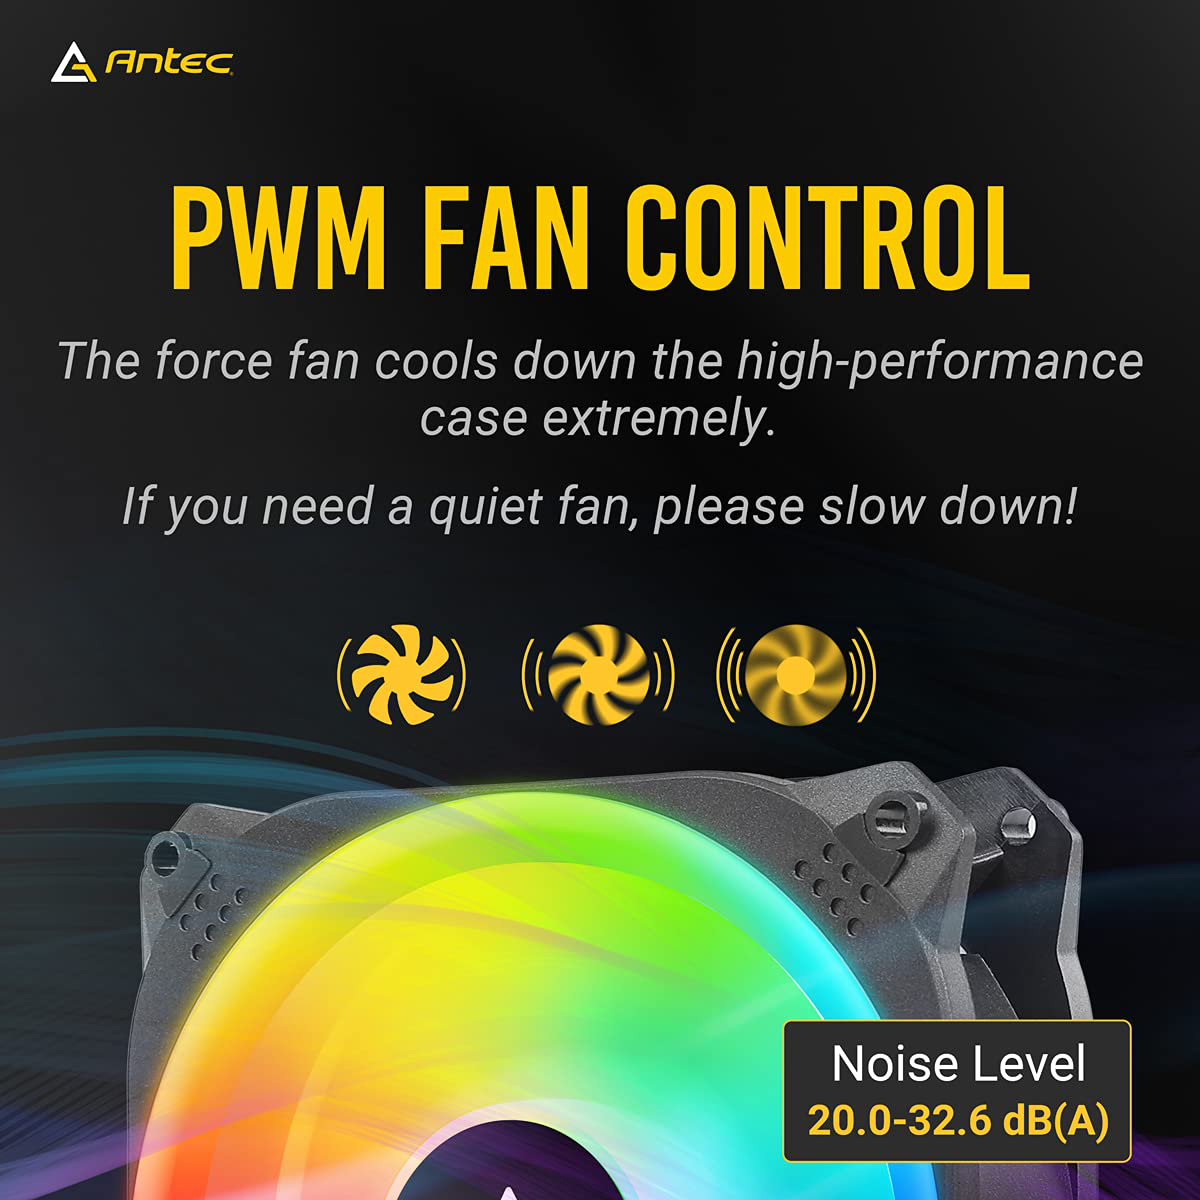 Antec Prizm X RGB Fans, 120 Case Fan, RGB Case Fans, 5V-3Pin ARGB Case Fans, Prizm X Series 3 Packs with Controller